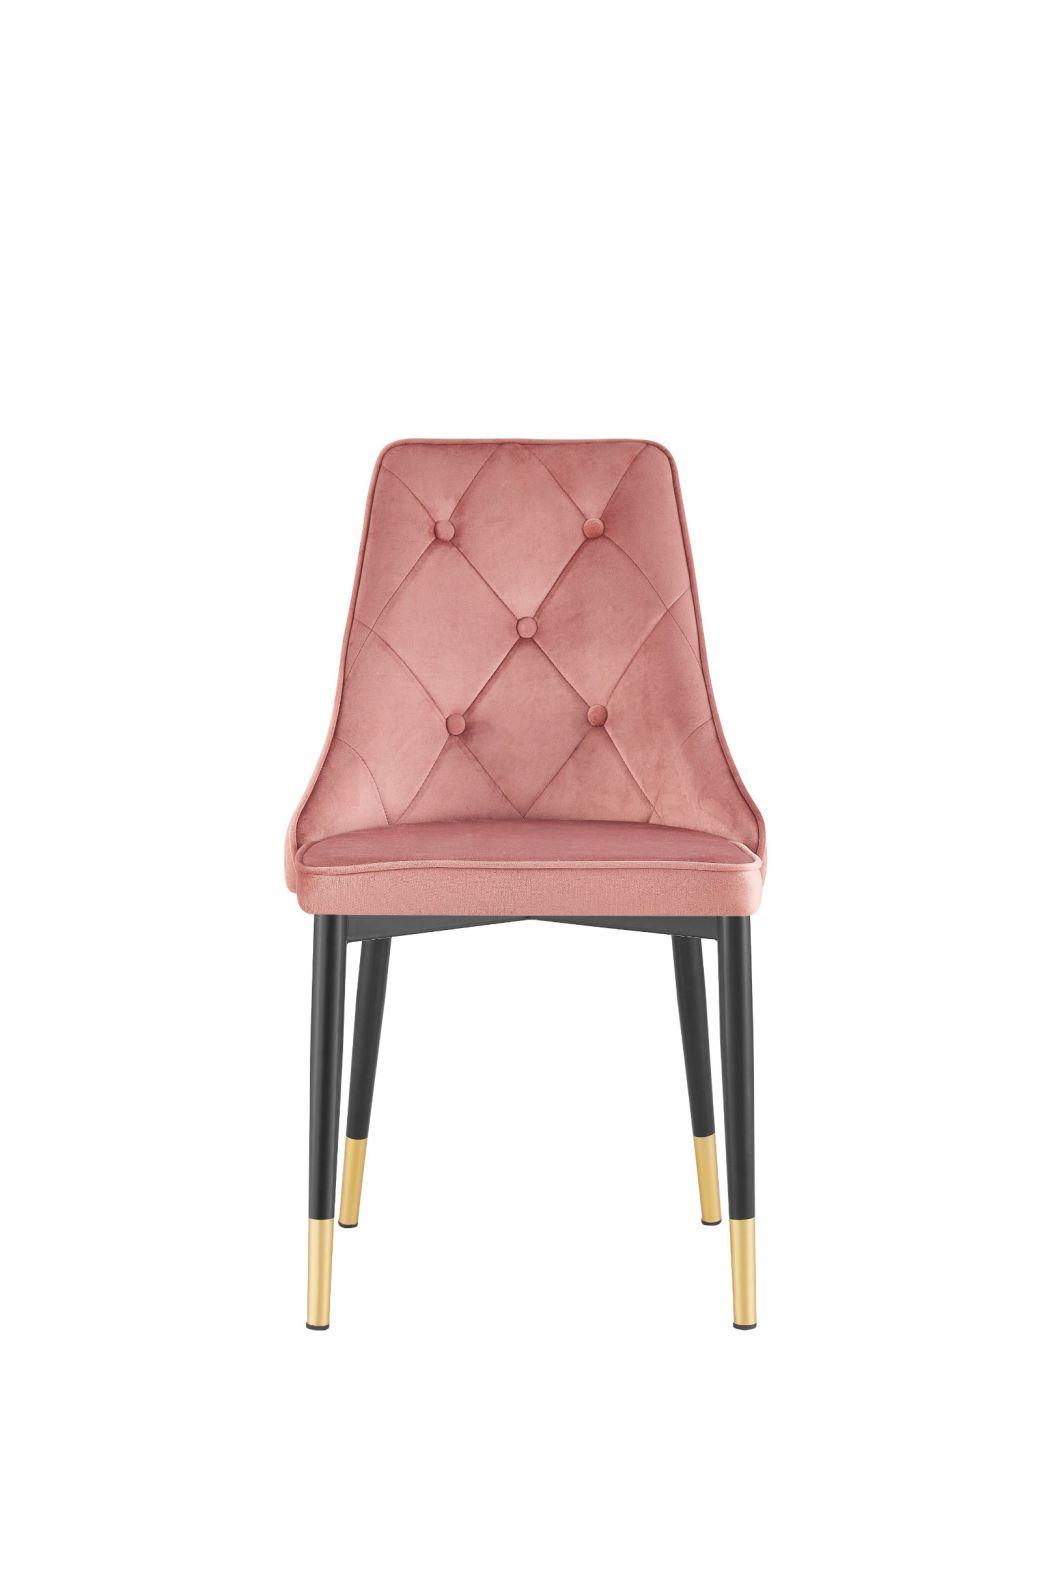 China Wholesale Modern Home Furniture Restaurant Velvet Upholstered Dining Chairs for UK Market